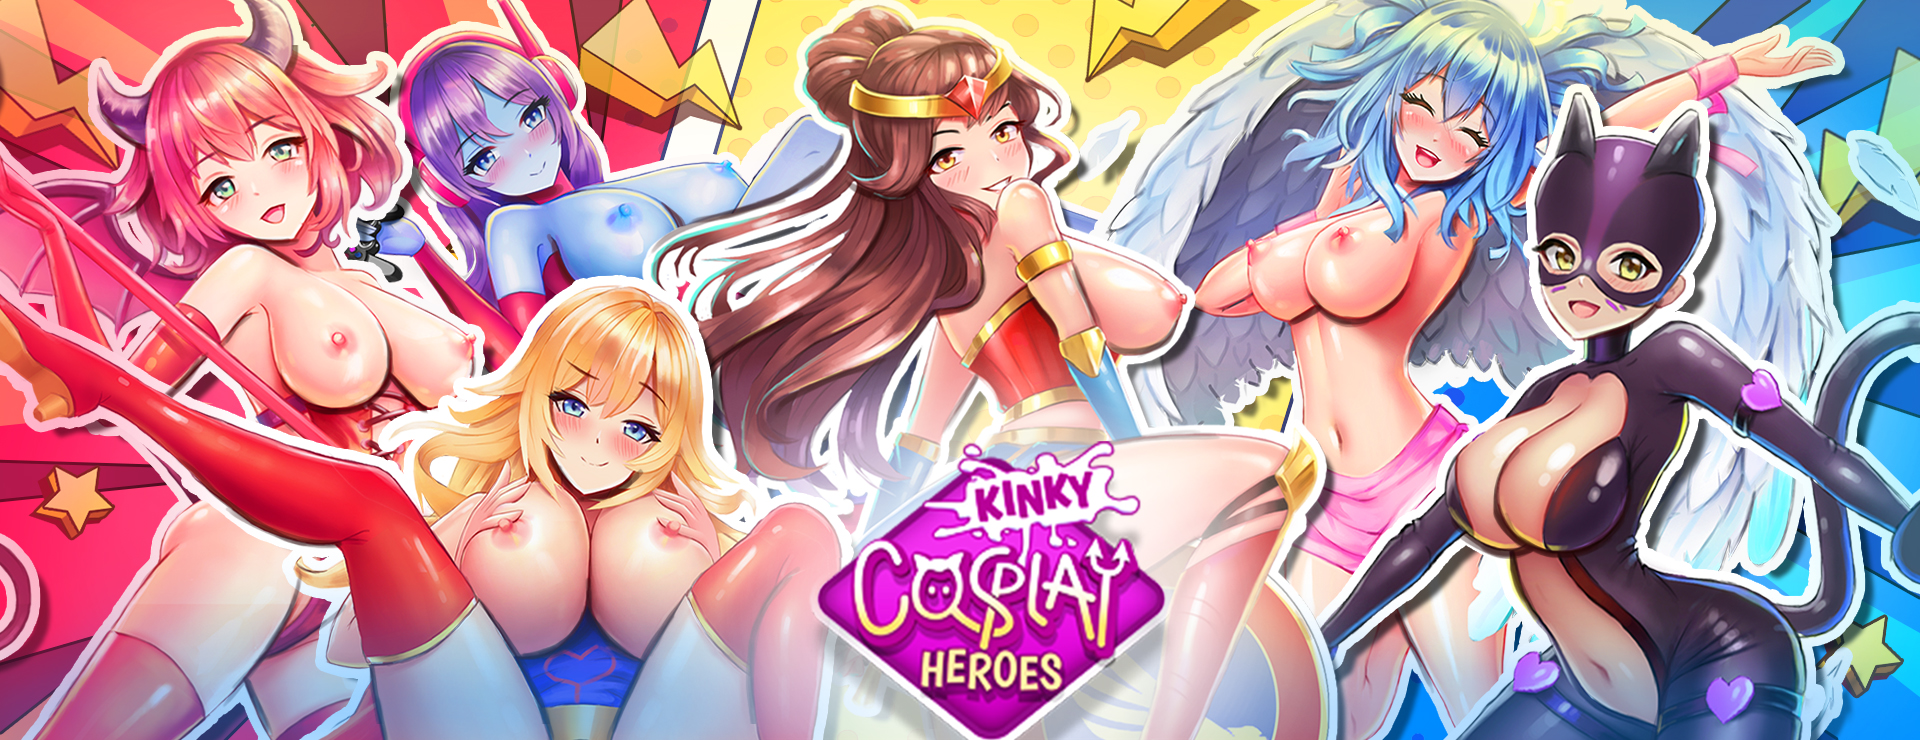 Kinky Cosplay Heroes - カジュアル ゲーム